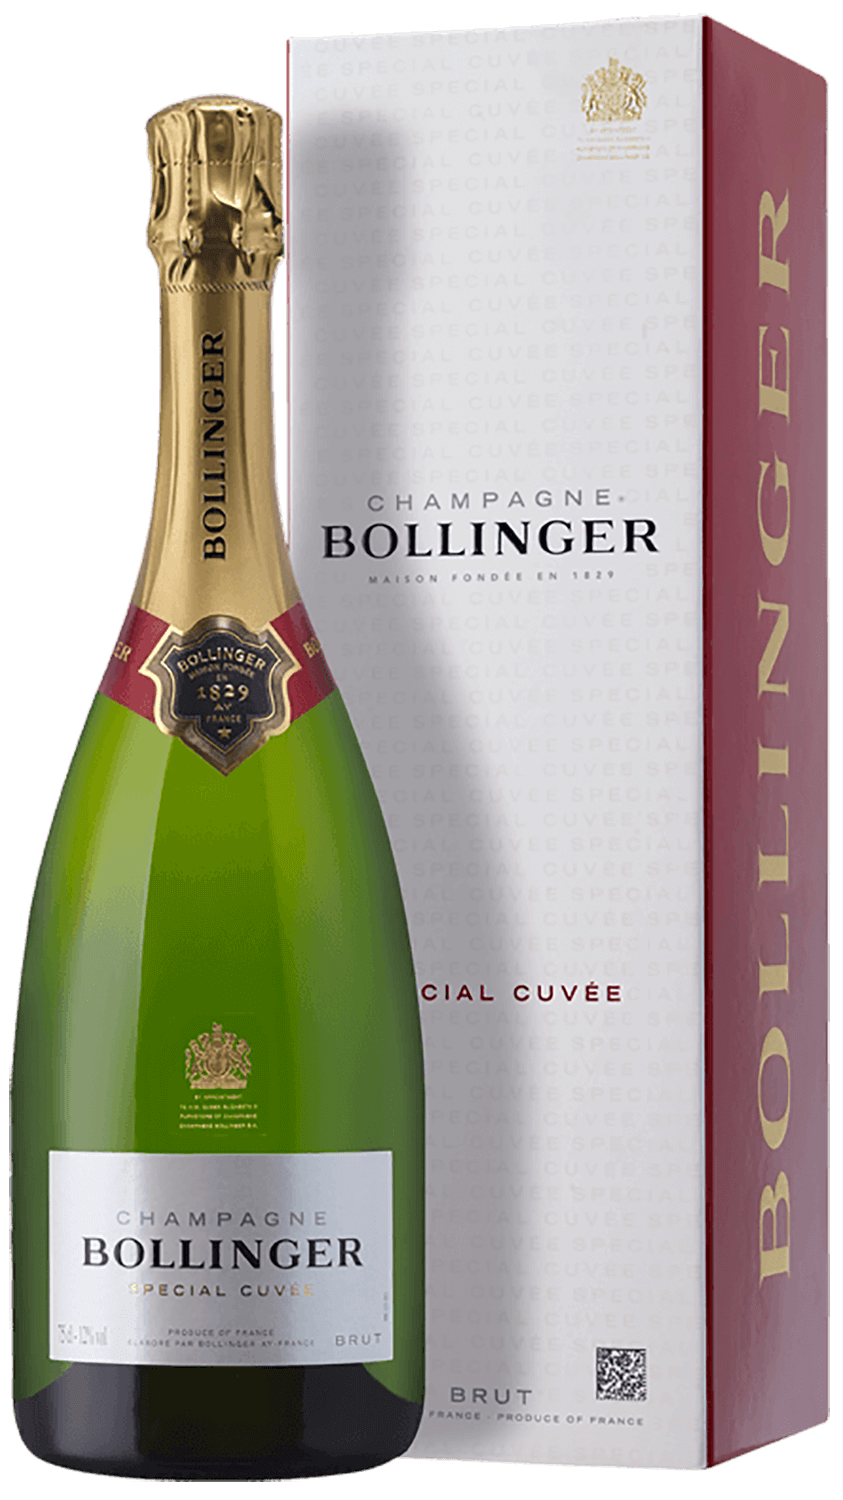 Bollinger Special Cuvee Brut Champagne AOC (gift box) instinct cuvee de millenaire brut saumur aoc bouvet ladubay